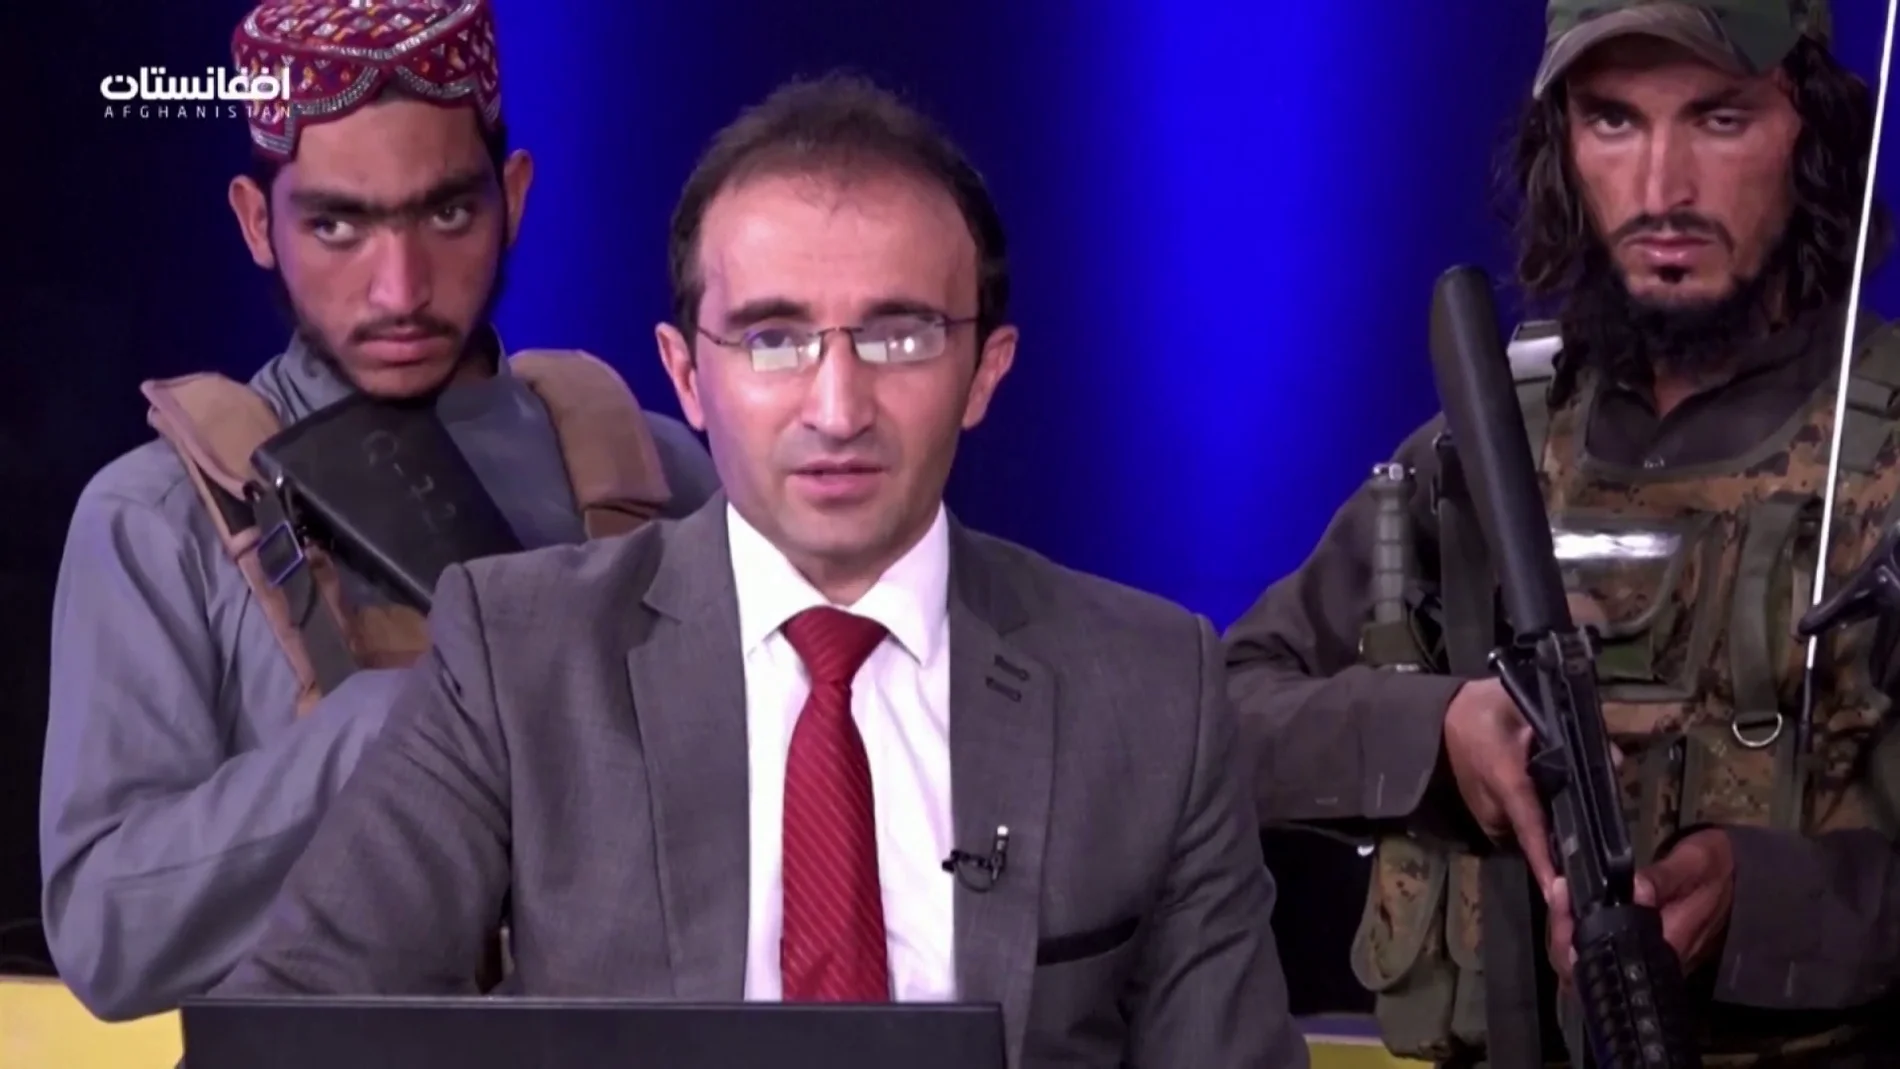 La impactante imagen de un presentador rodeado de talibanes armados que piden a la población no tener miedo